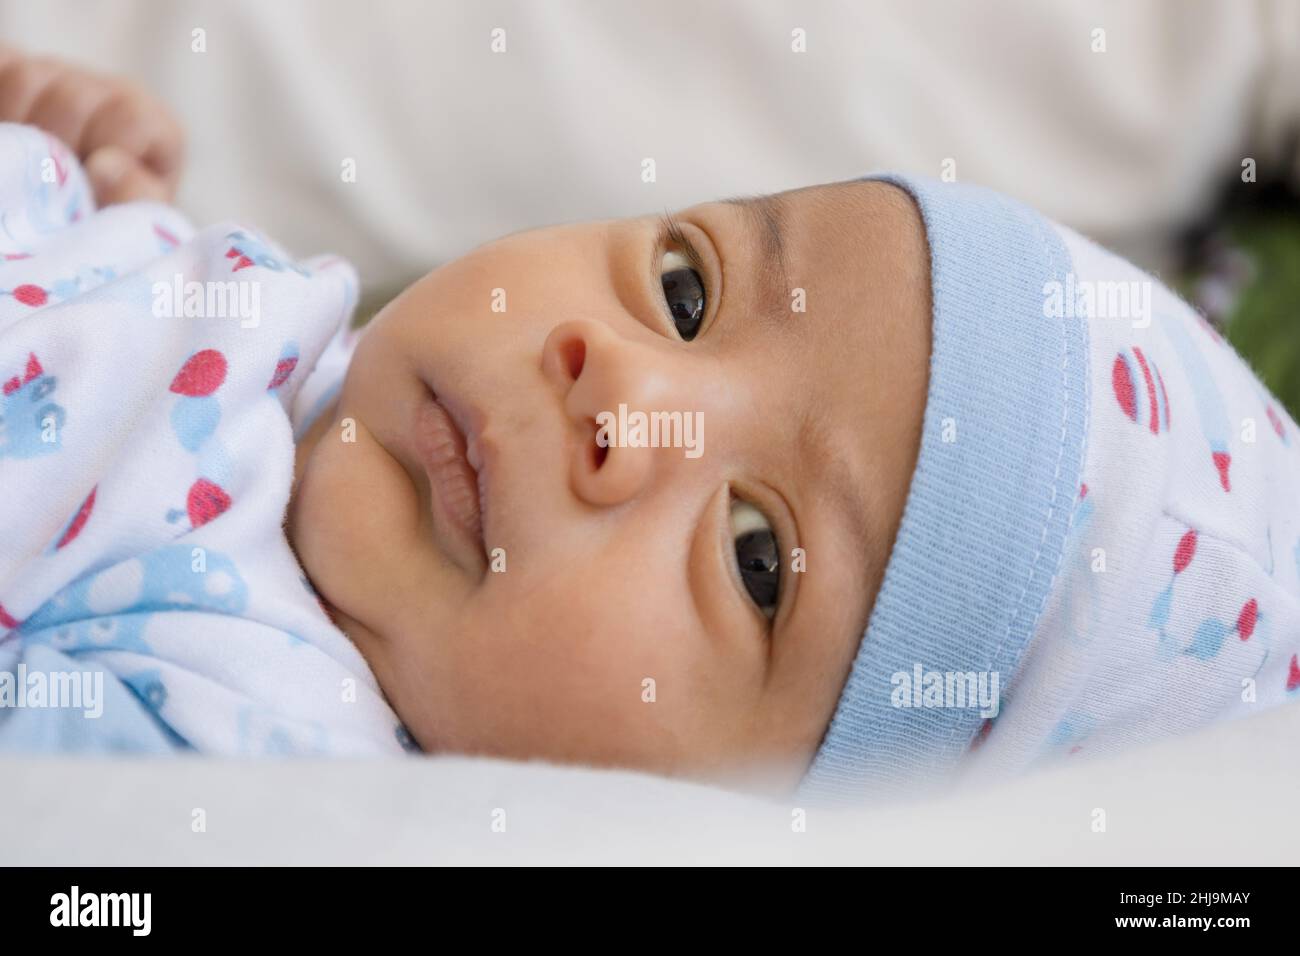 Das Gesicht eines zarten und schönen lateinischen Babys mit offenen Augen und glücklicher Ausstrahlung, das mit einem Hut auf seinem Bett liegt, einen neugeborenen Lebensstil, ein neues Leben und ein Kleinkind Stockfoto